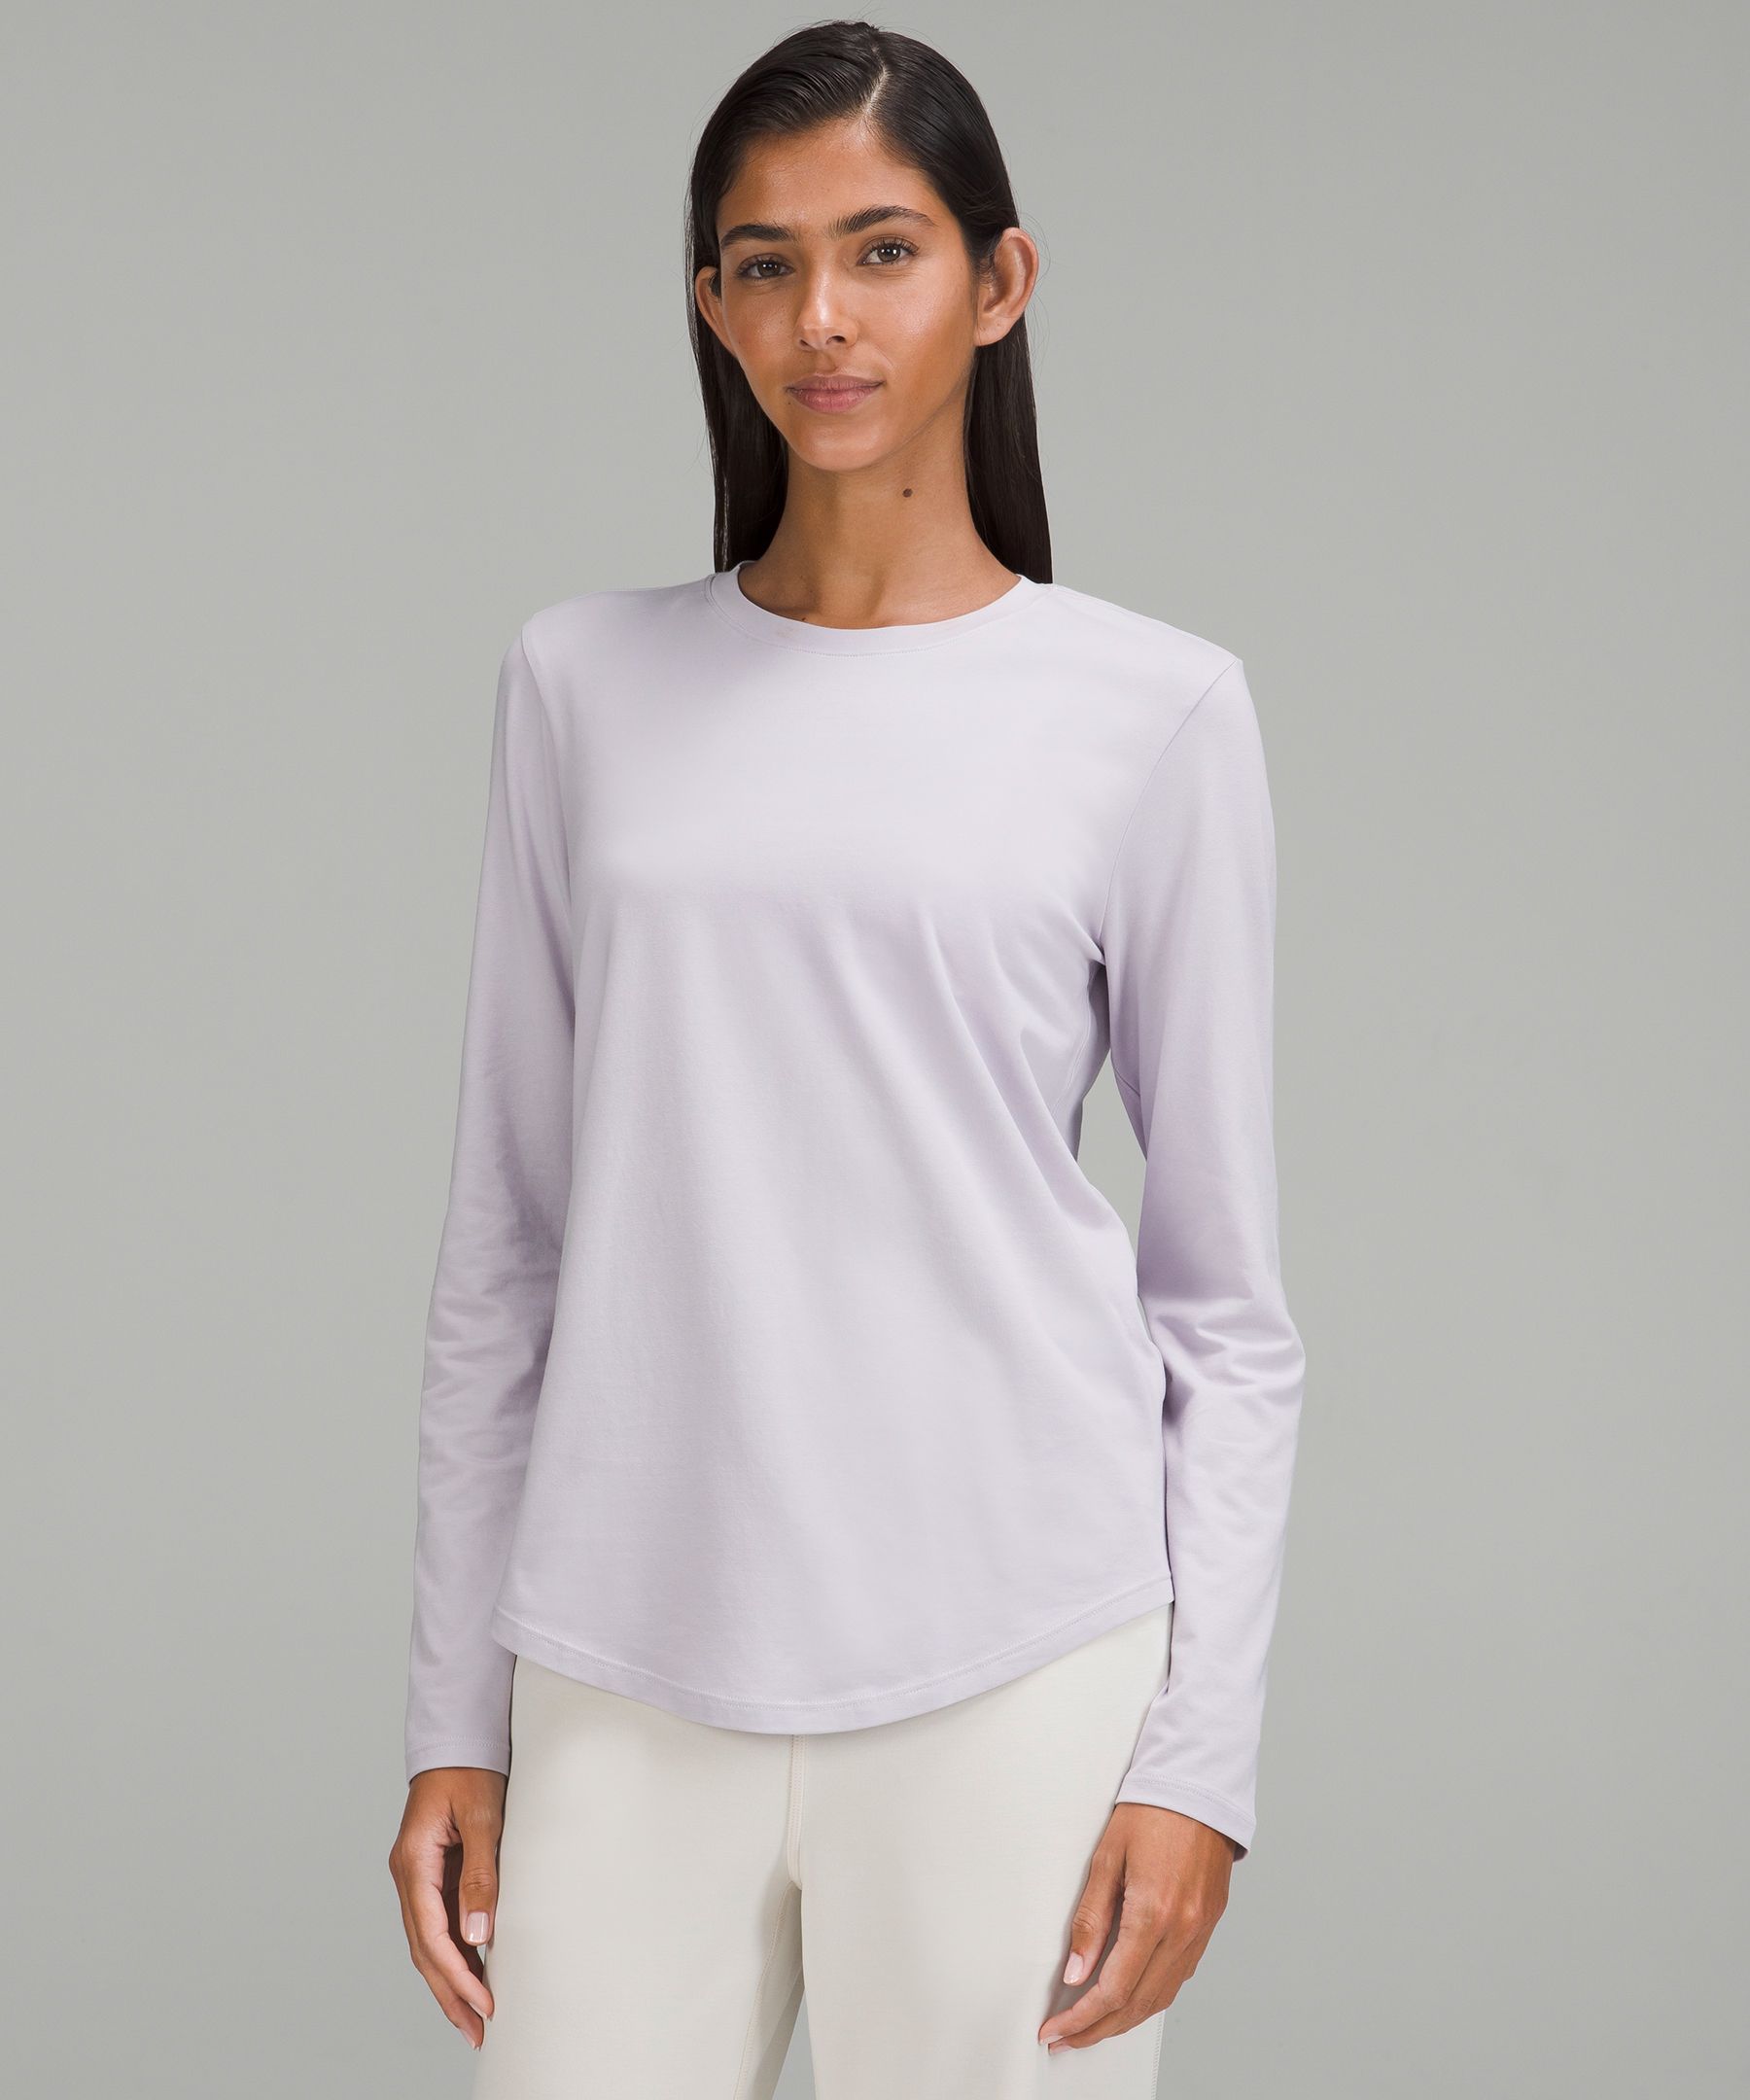 Lululemon Love Long Sleeve Shirt In Faint Lavender